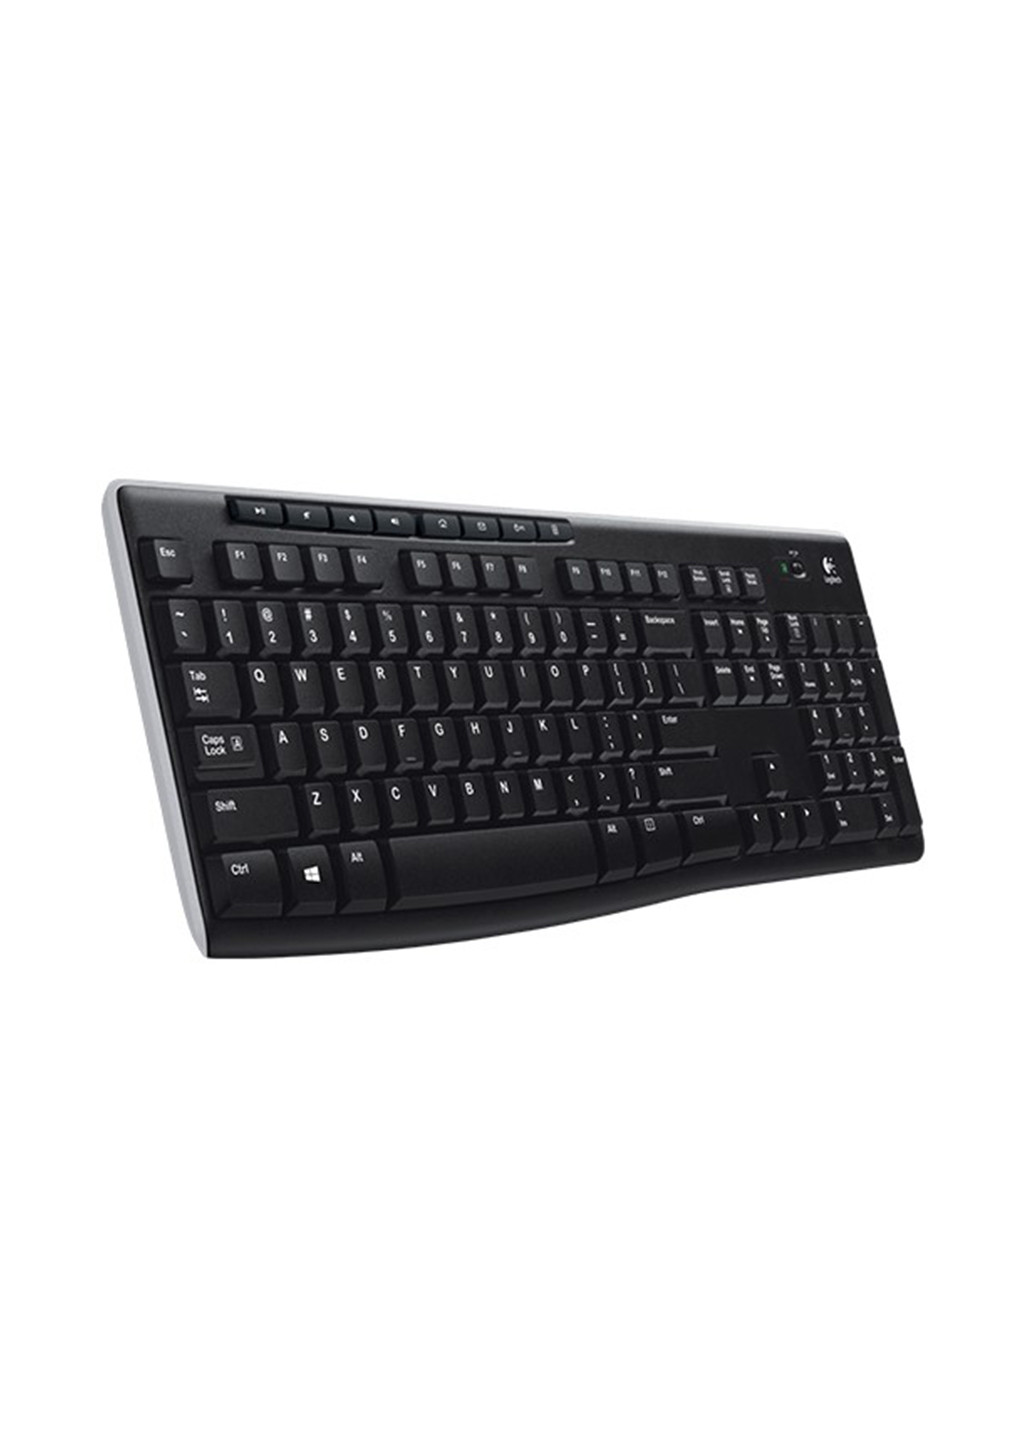 Беспроводная клавиатура Logitech k270 - eer - русская раскладка (135165399)